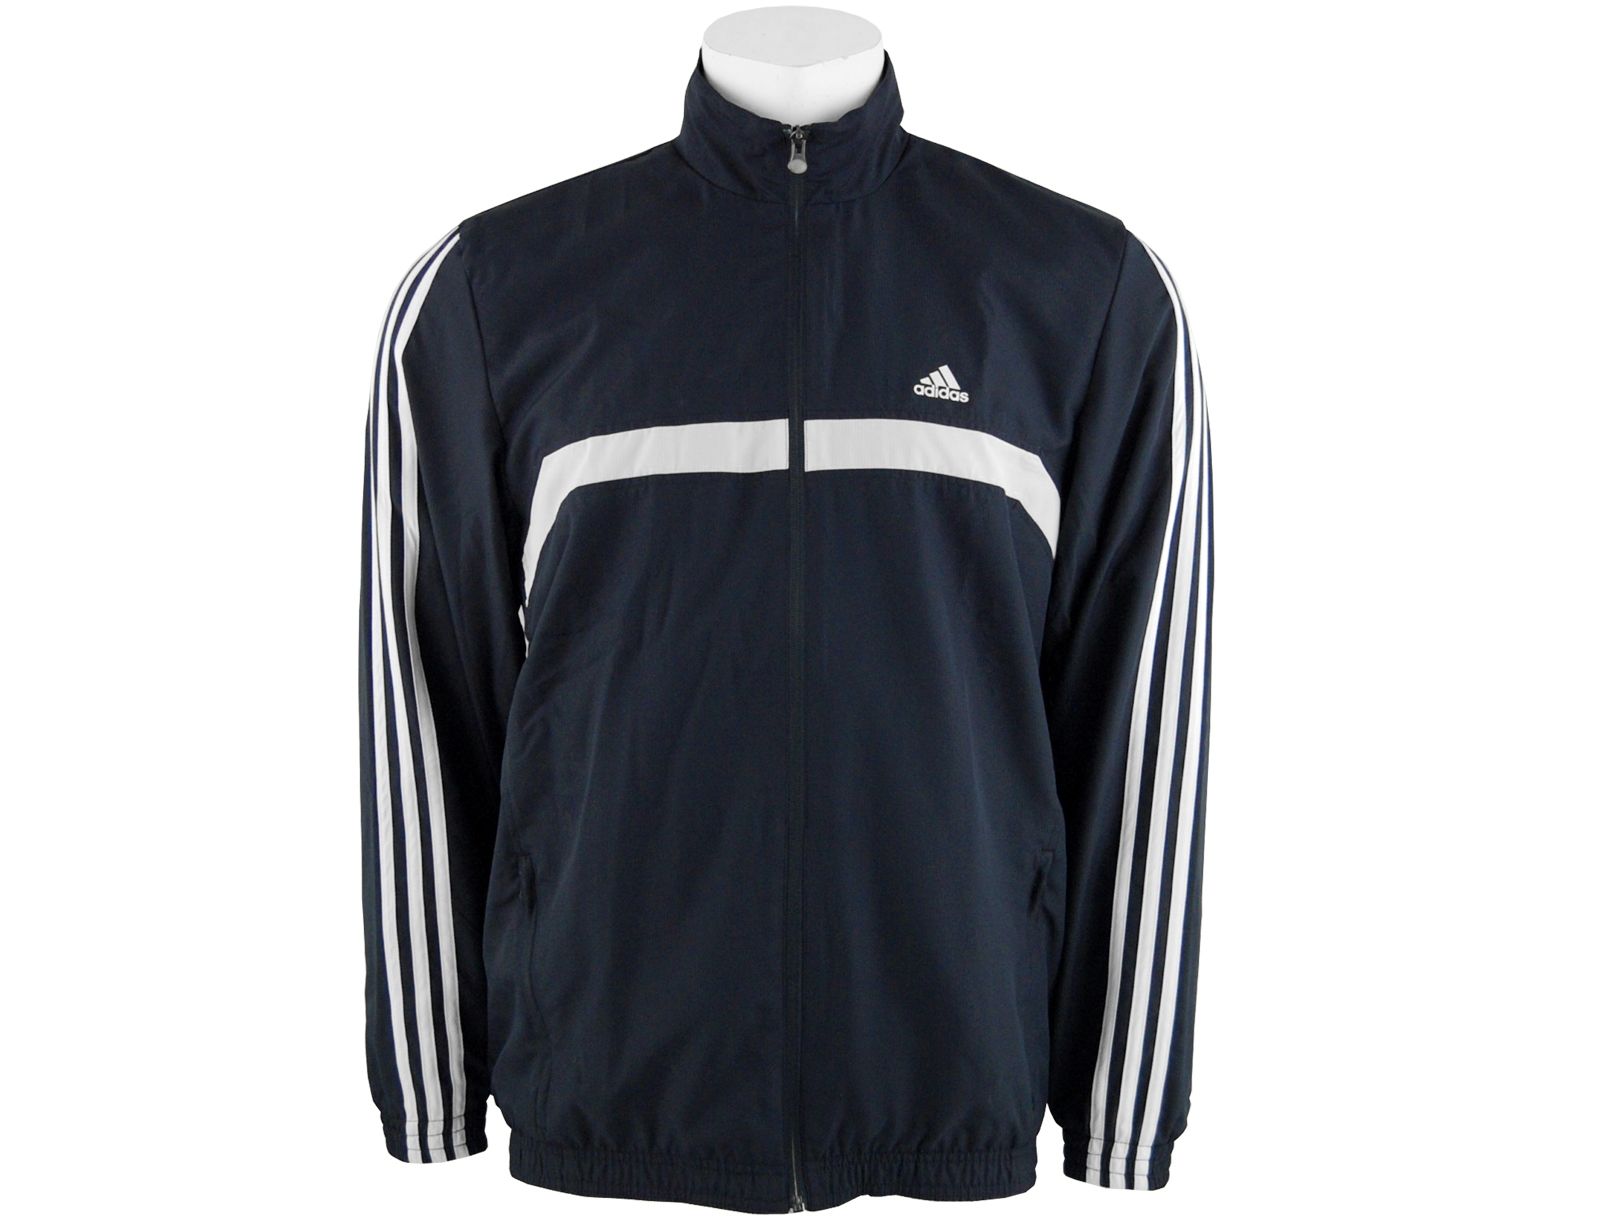 Avantisport - Adidas - Mens Response Ts Jacket - Adidas Tennisjas